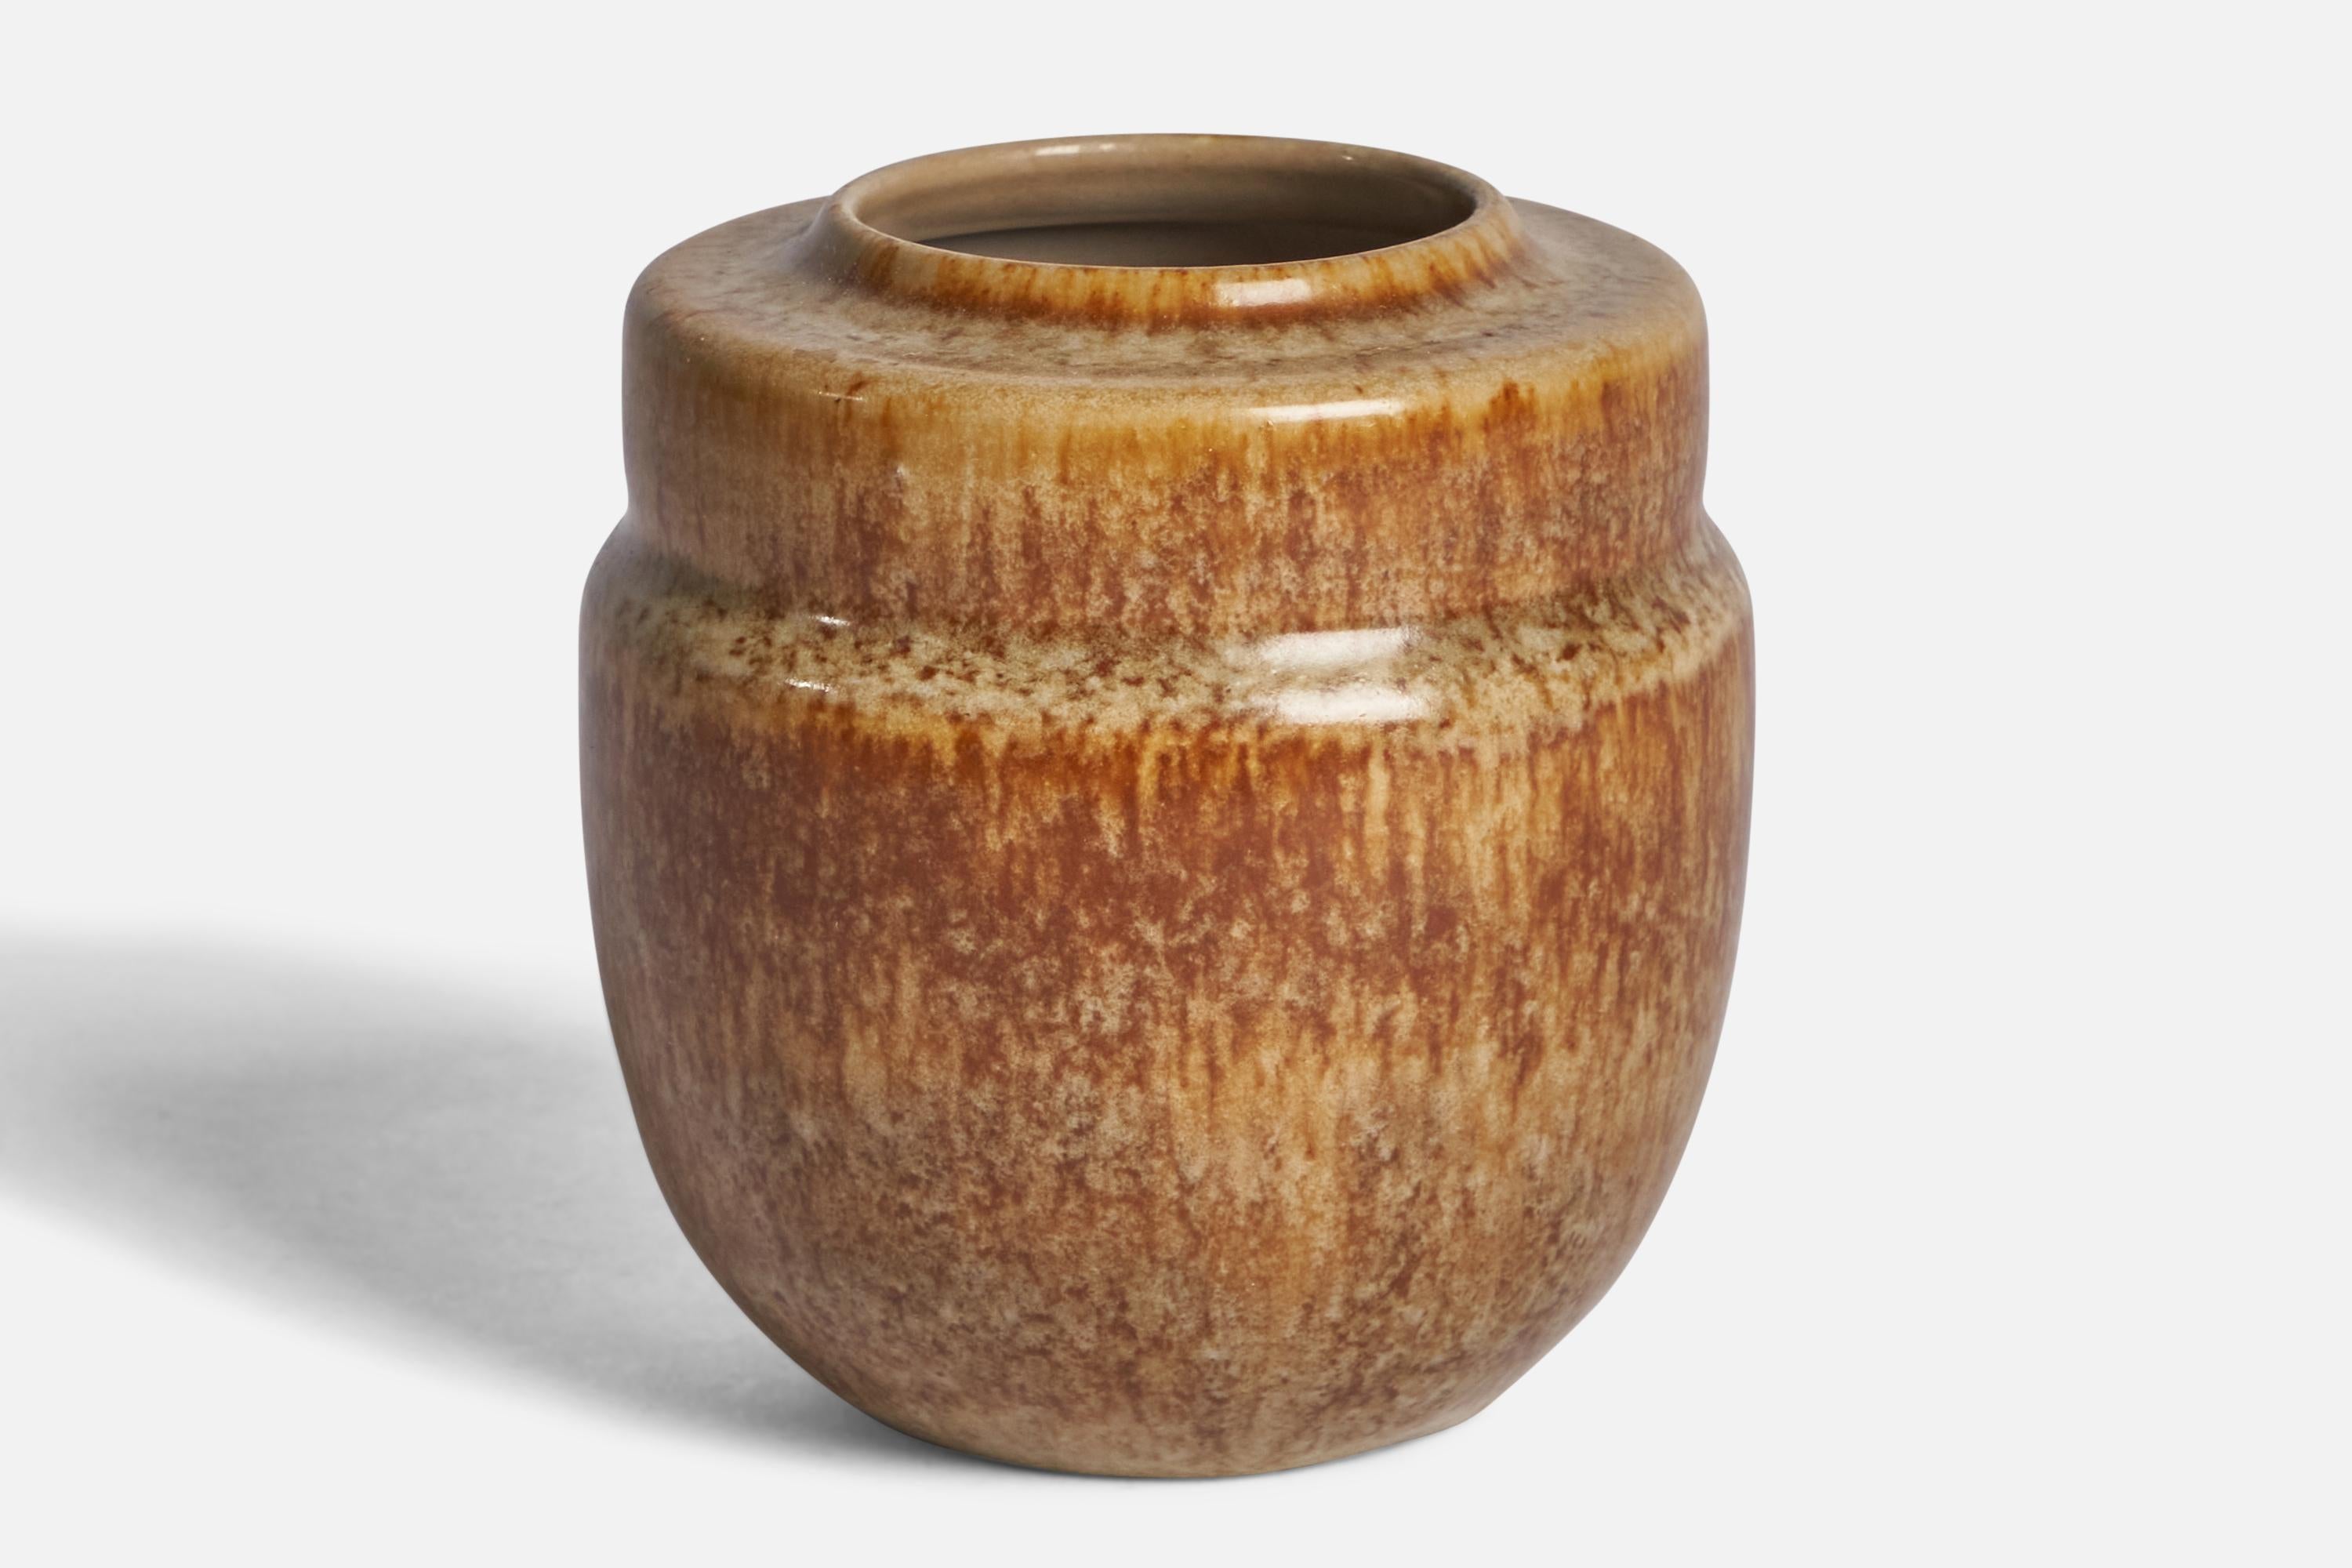 A beige and brown-glazed vase designed and produced by Kjell Bolinder, Höganäs, Sweden, 1969.